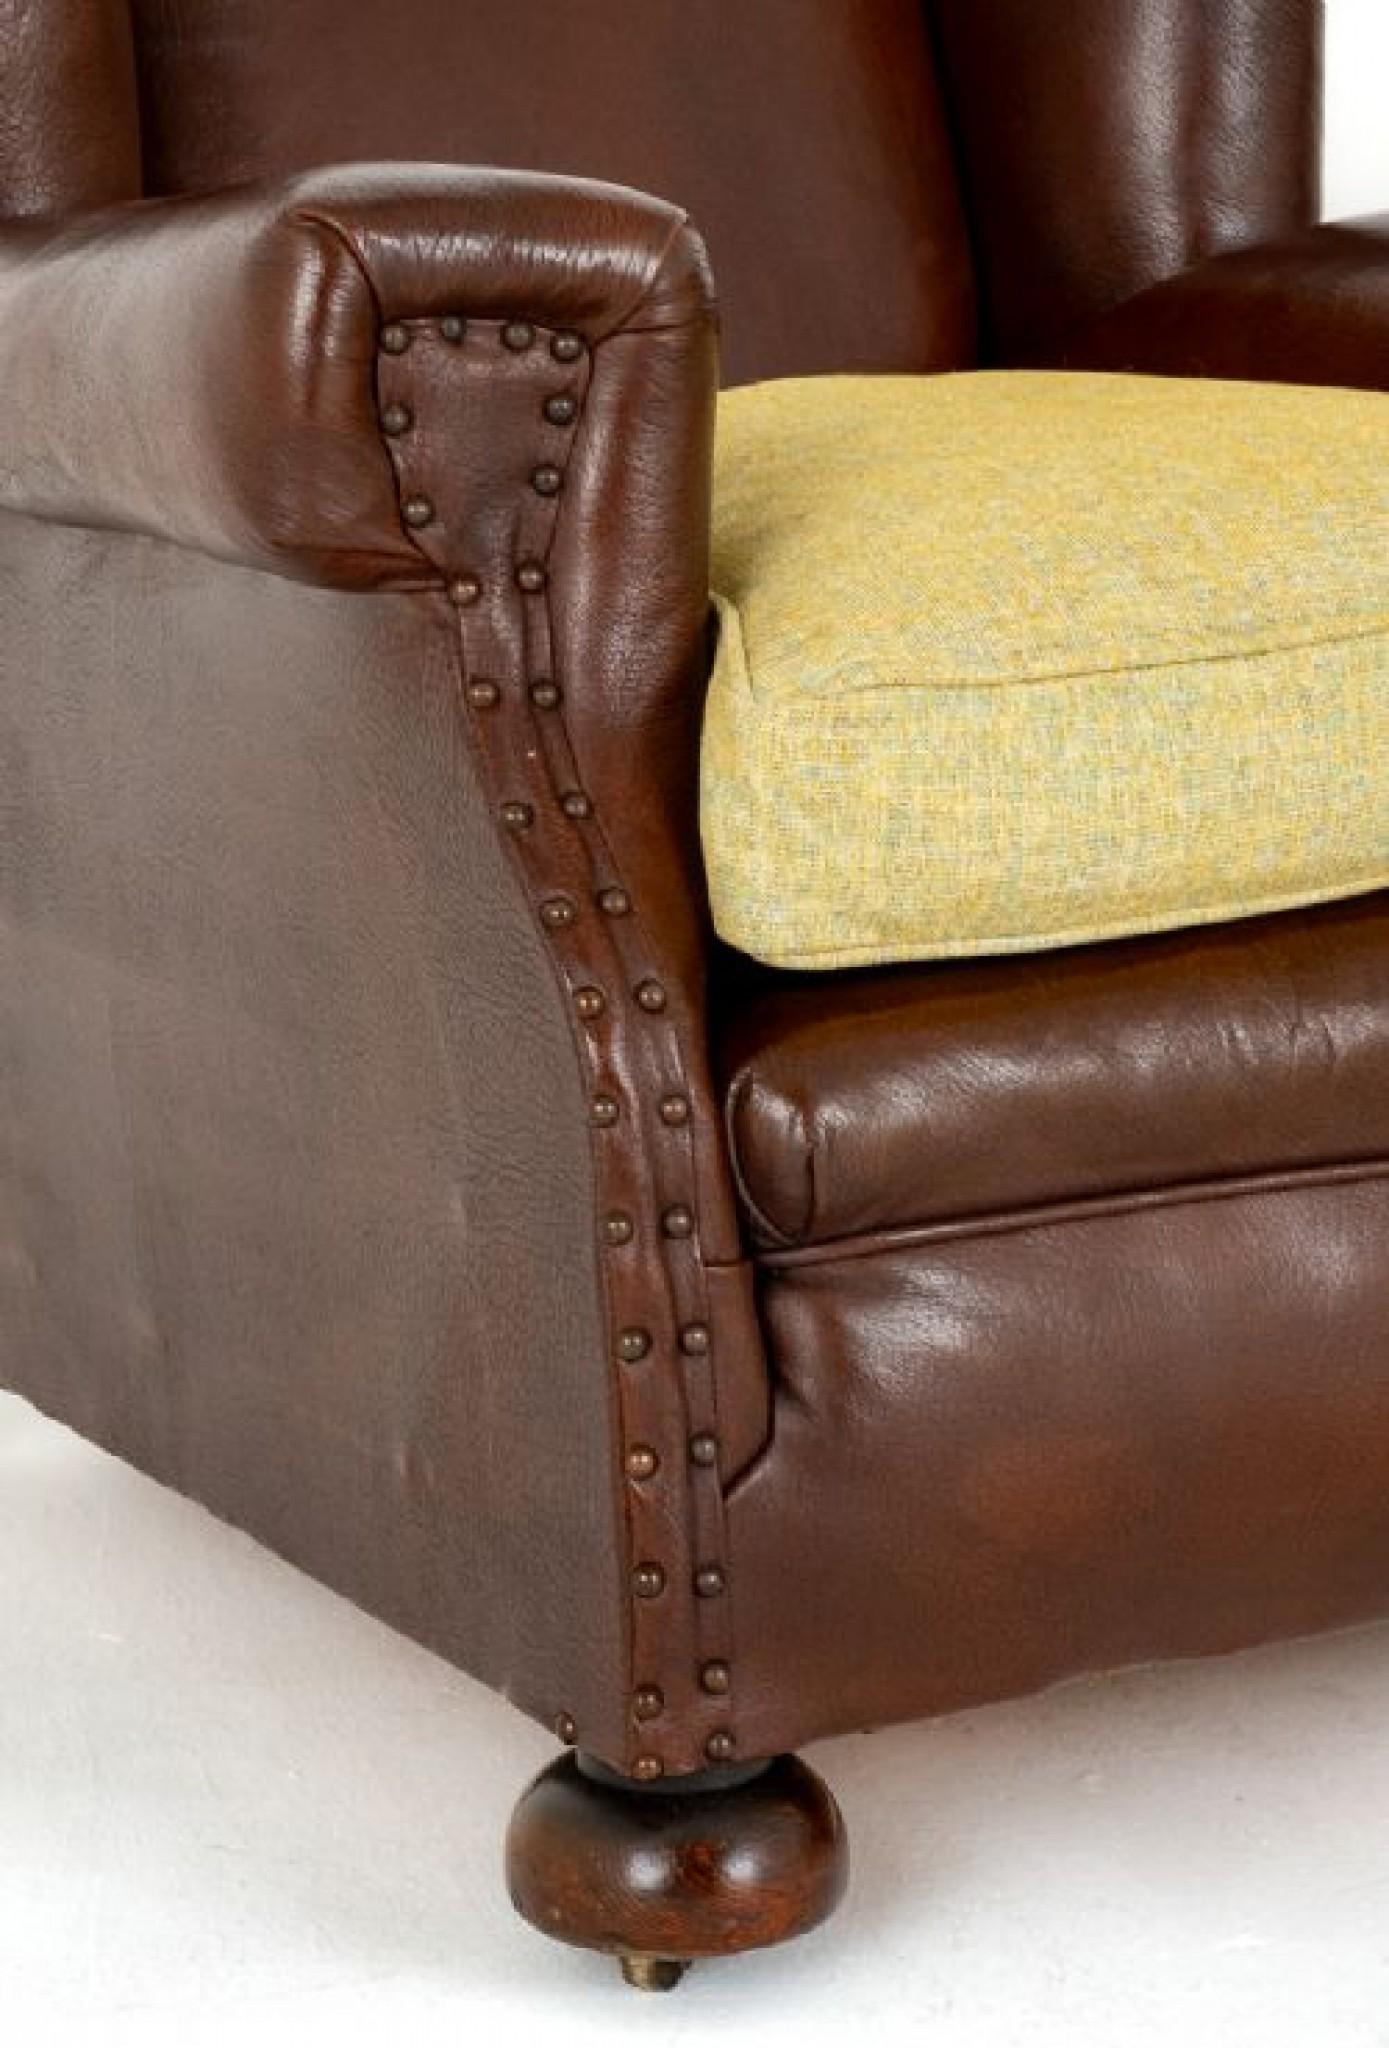 Paar viktorianische Leder-Club-Sessel.
CIRCA 1900
Diese Clubsessel aus Leder verfügen über traditionelle Rückenlehnen und breite Armlehnen.
Die Stühle stehen auf gedrechselten Bun-Füßen.
Jeder Stuhl hat ein loses Federkissen, das kürzlich neu